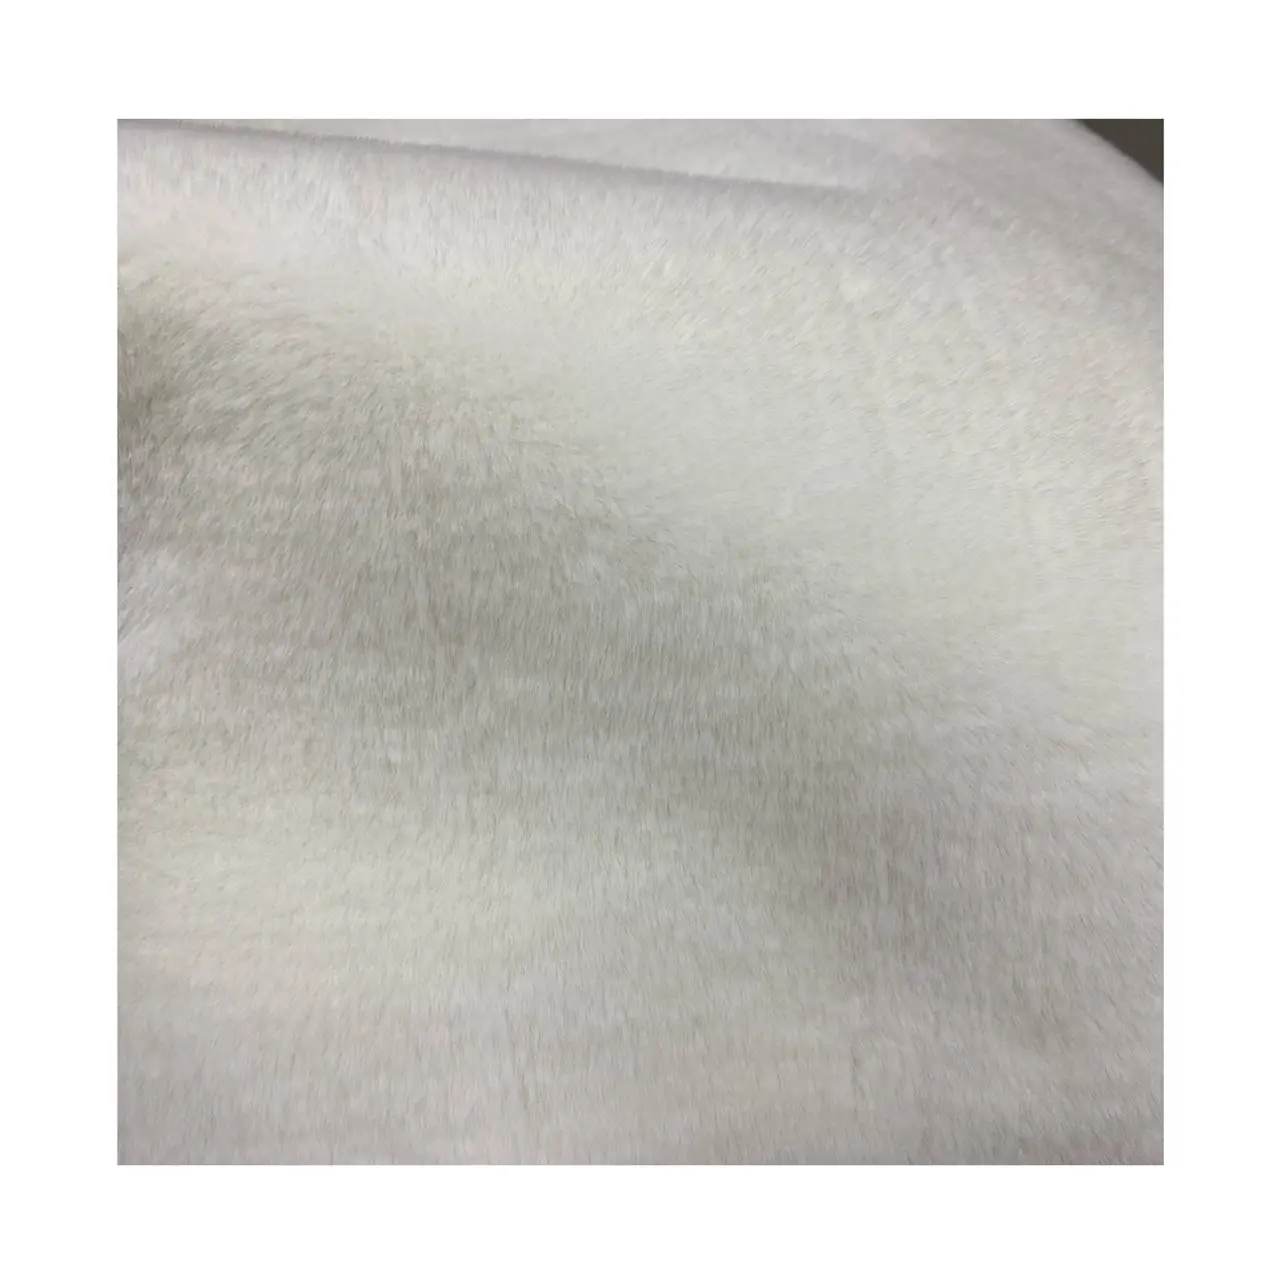 Vendita calda morbido a maglia in acrilico/poliestere coniglio pelliccia sintetica tessuto lungo pila 30mm per tappeti giocattoli per la casa indumenti tessili